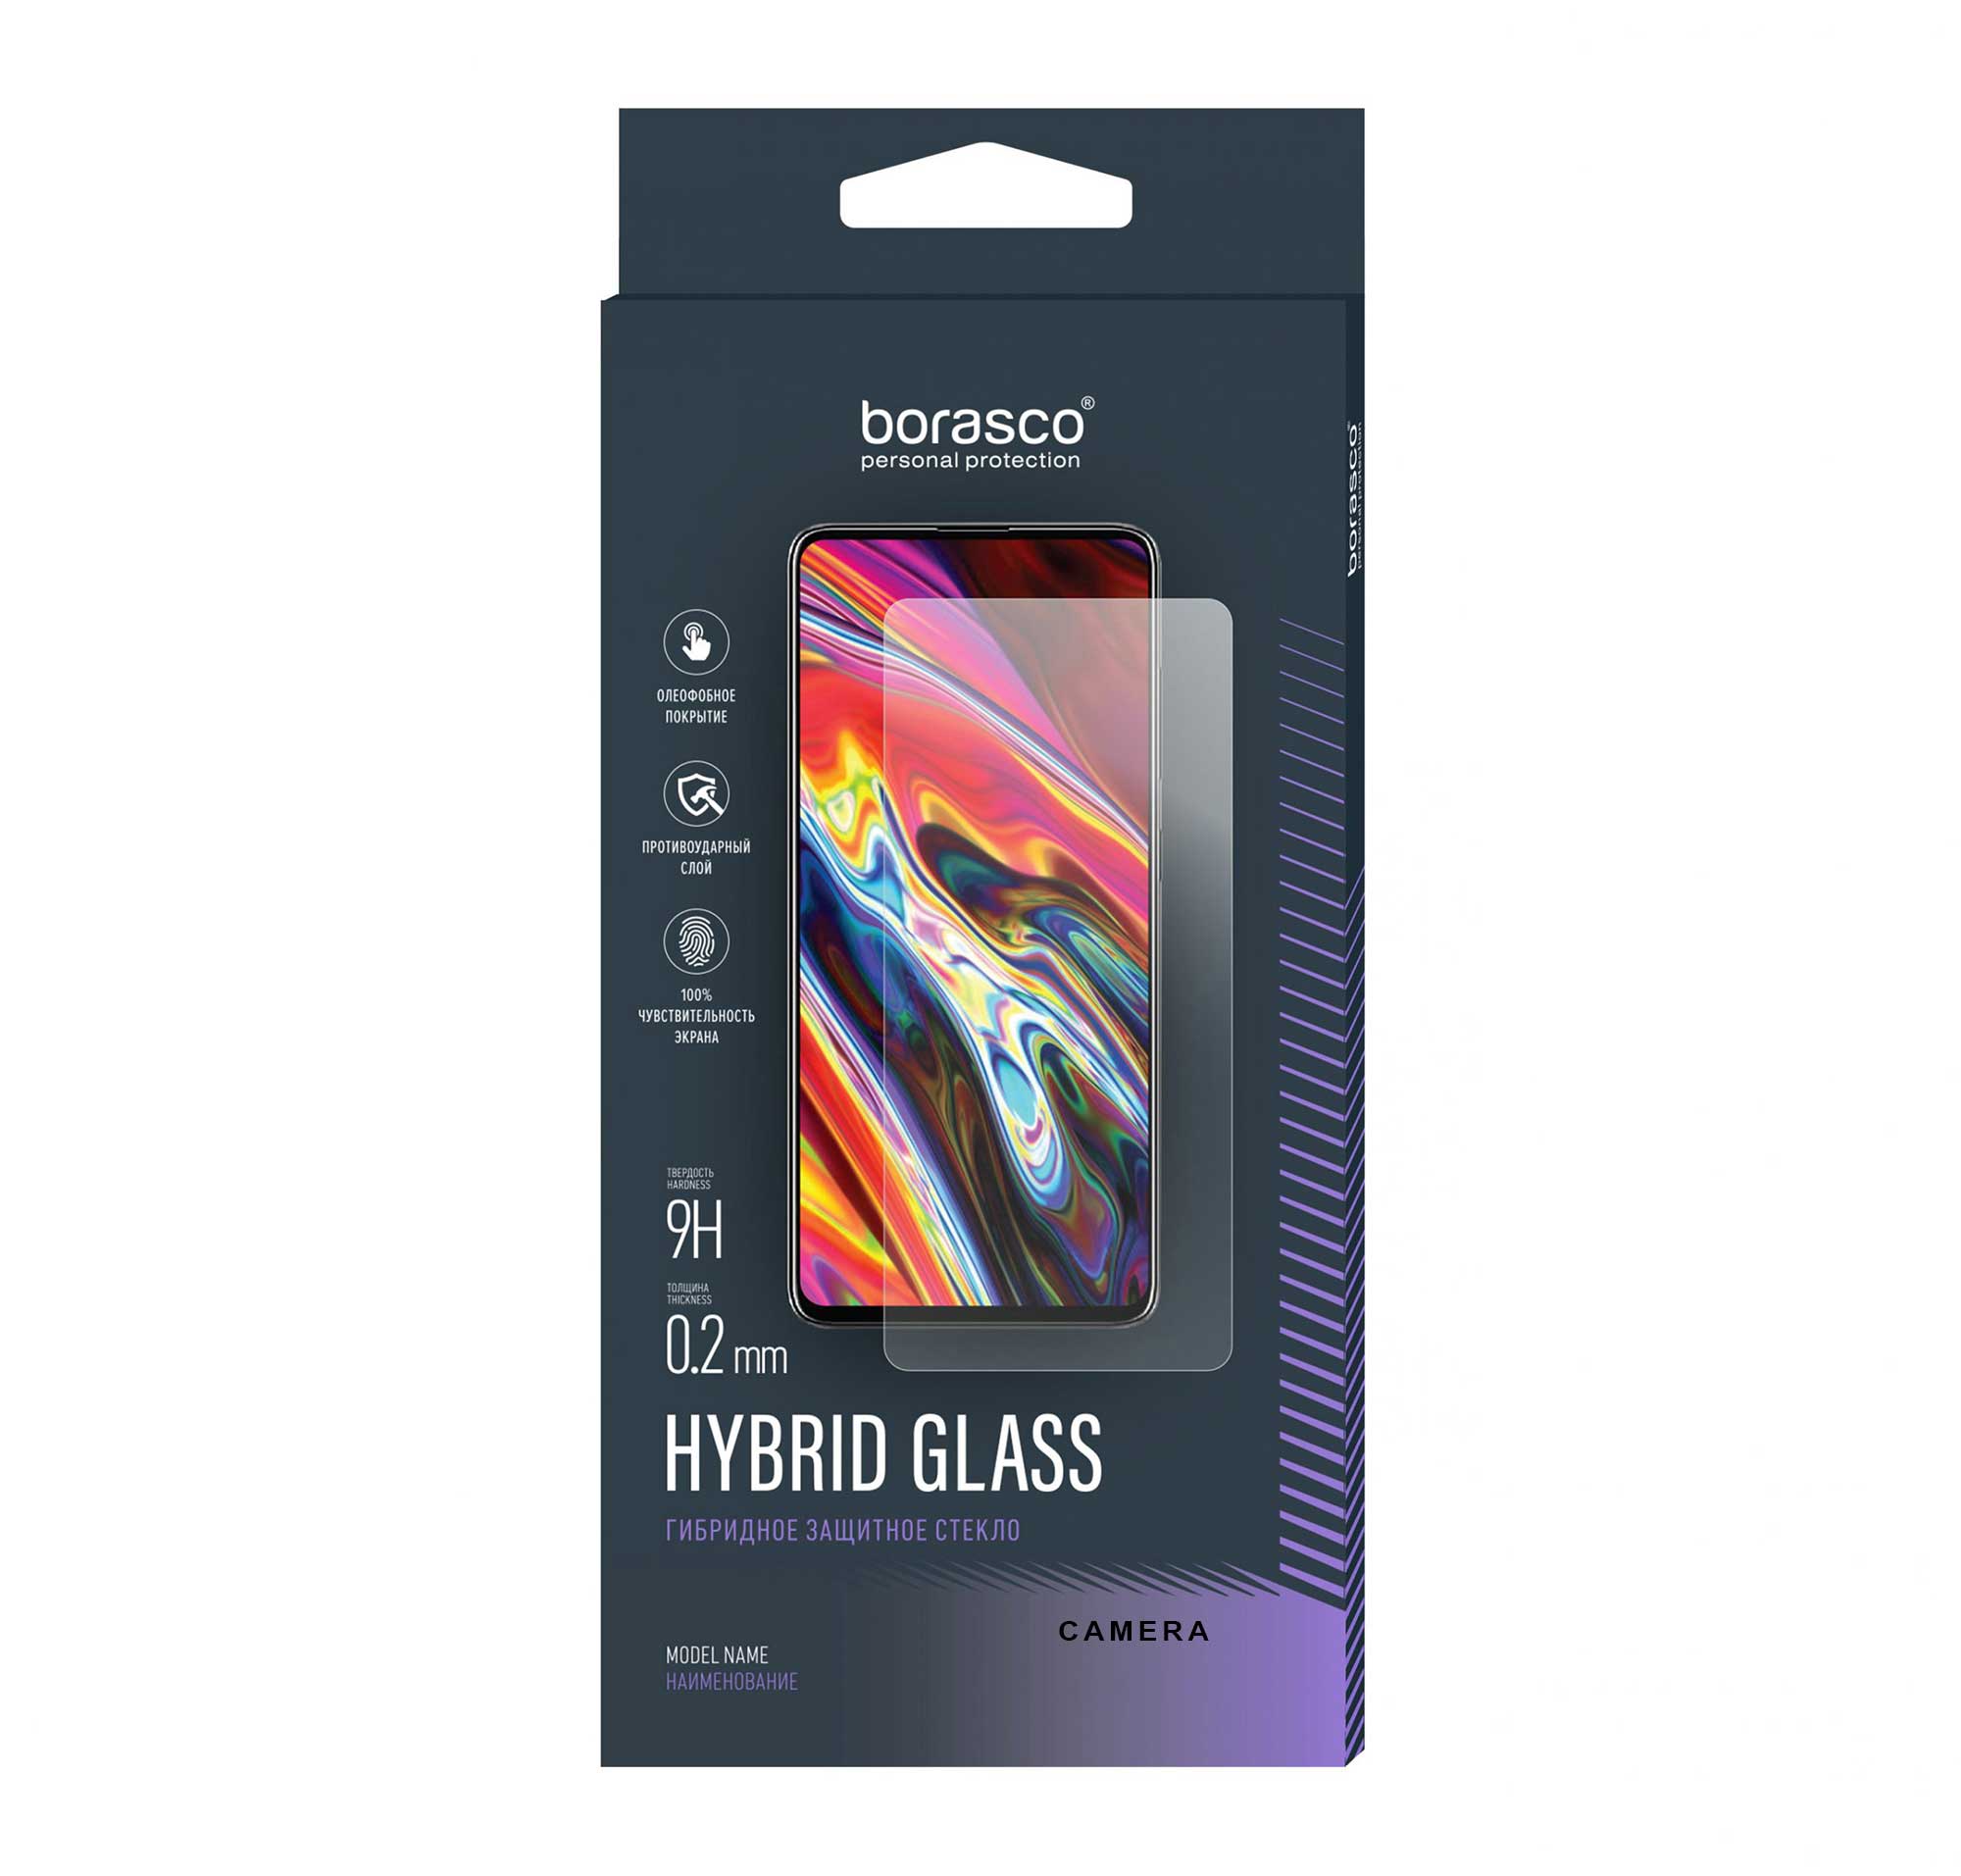 Защитное стекло (Экран+Камера) BoraSCO Hybrid Glass для Tecno Spark 8C/ Spark GO (2022) защитное стекло для tecno spark 8c spark go 2022 техно спарк 8с спарк го 2022 на экран и камеру гибридное гибкое стекло полноклеевое